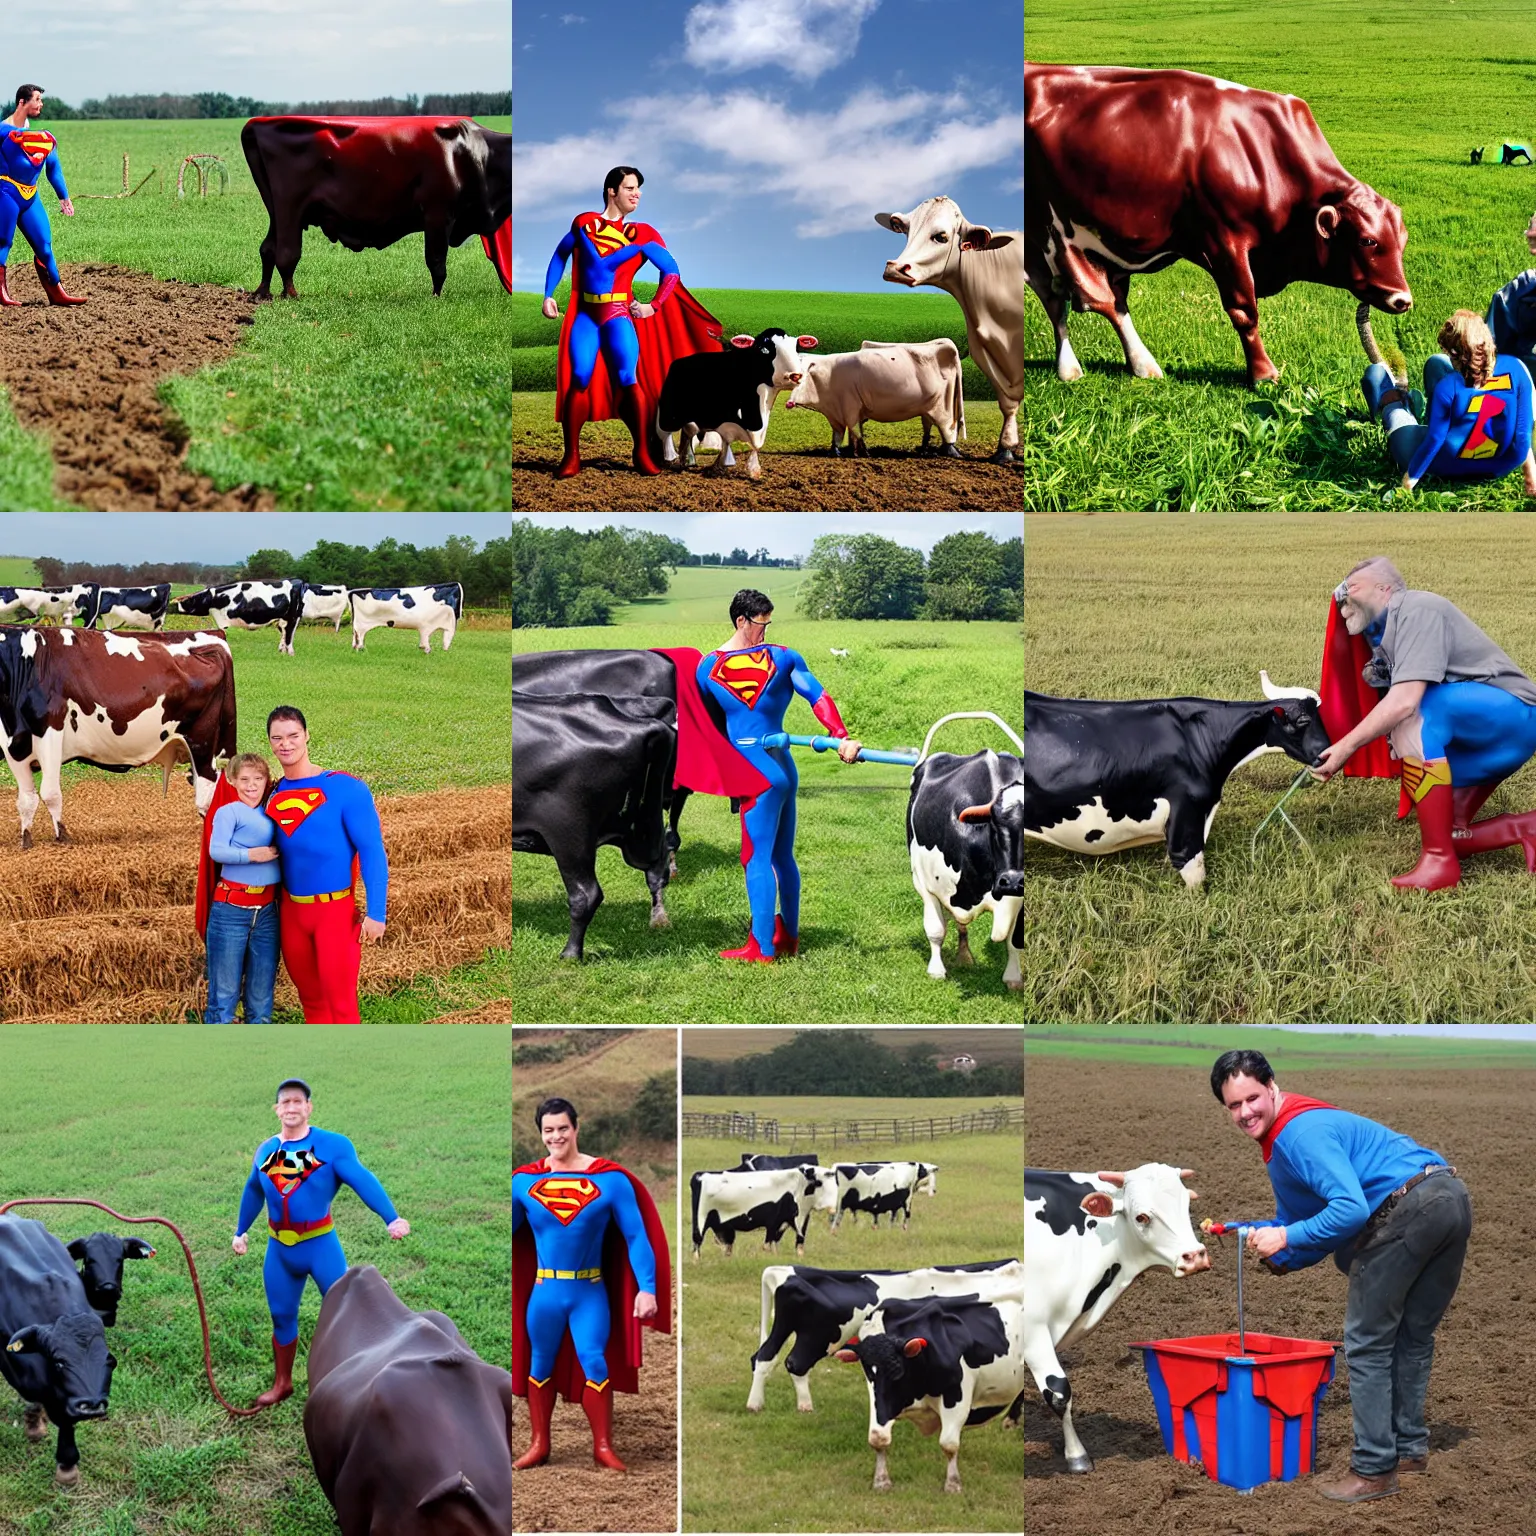 Prompt: homelander and superman milking cows